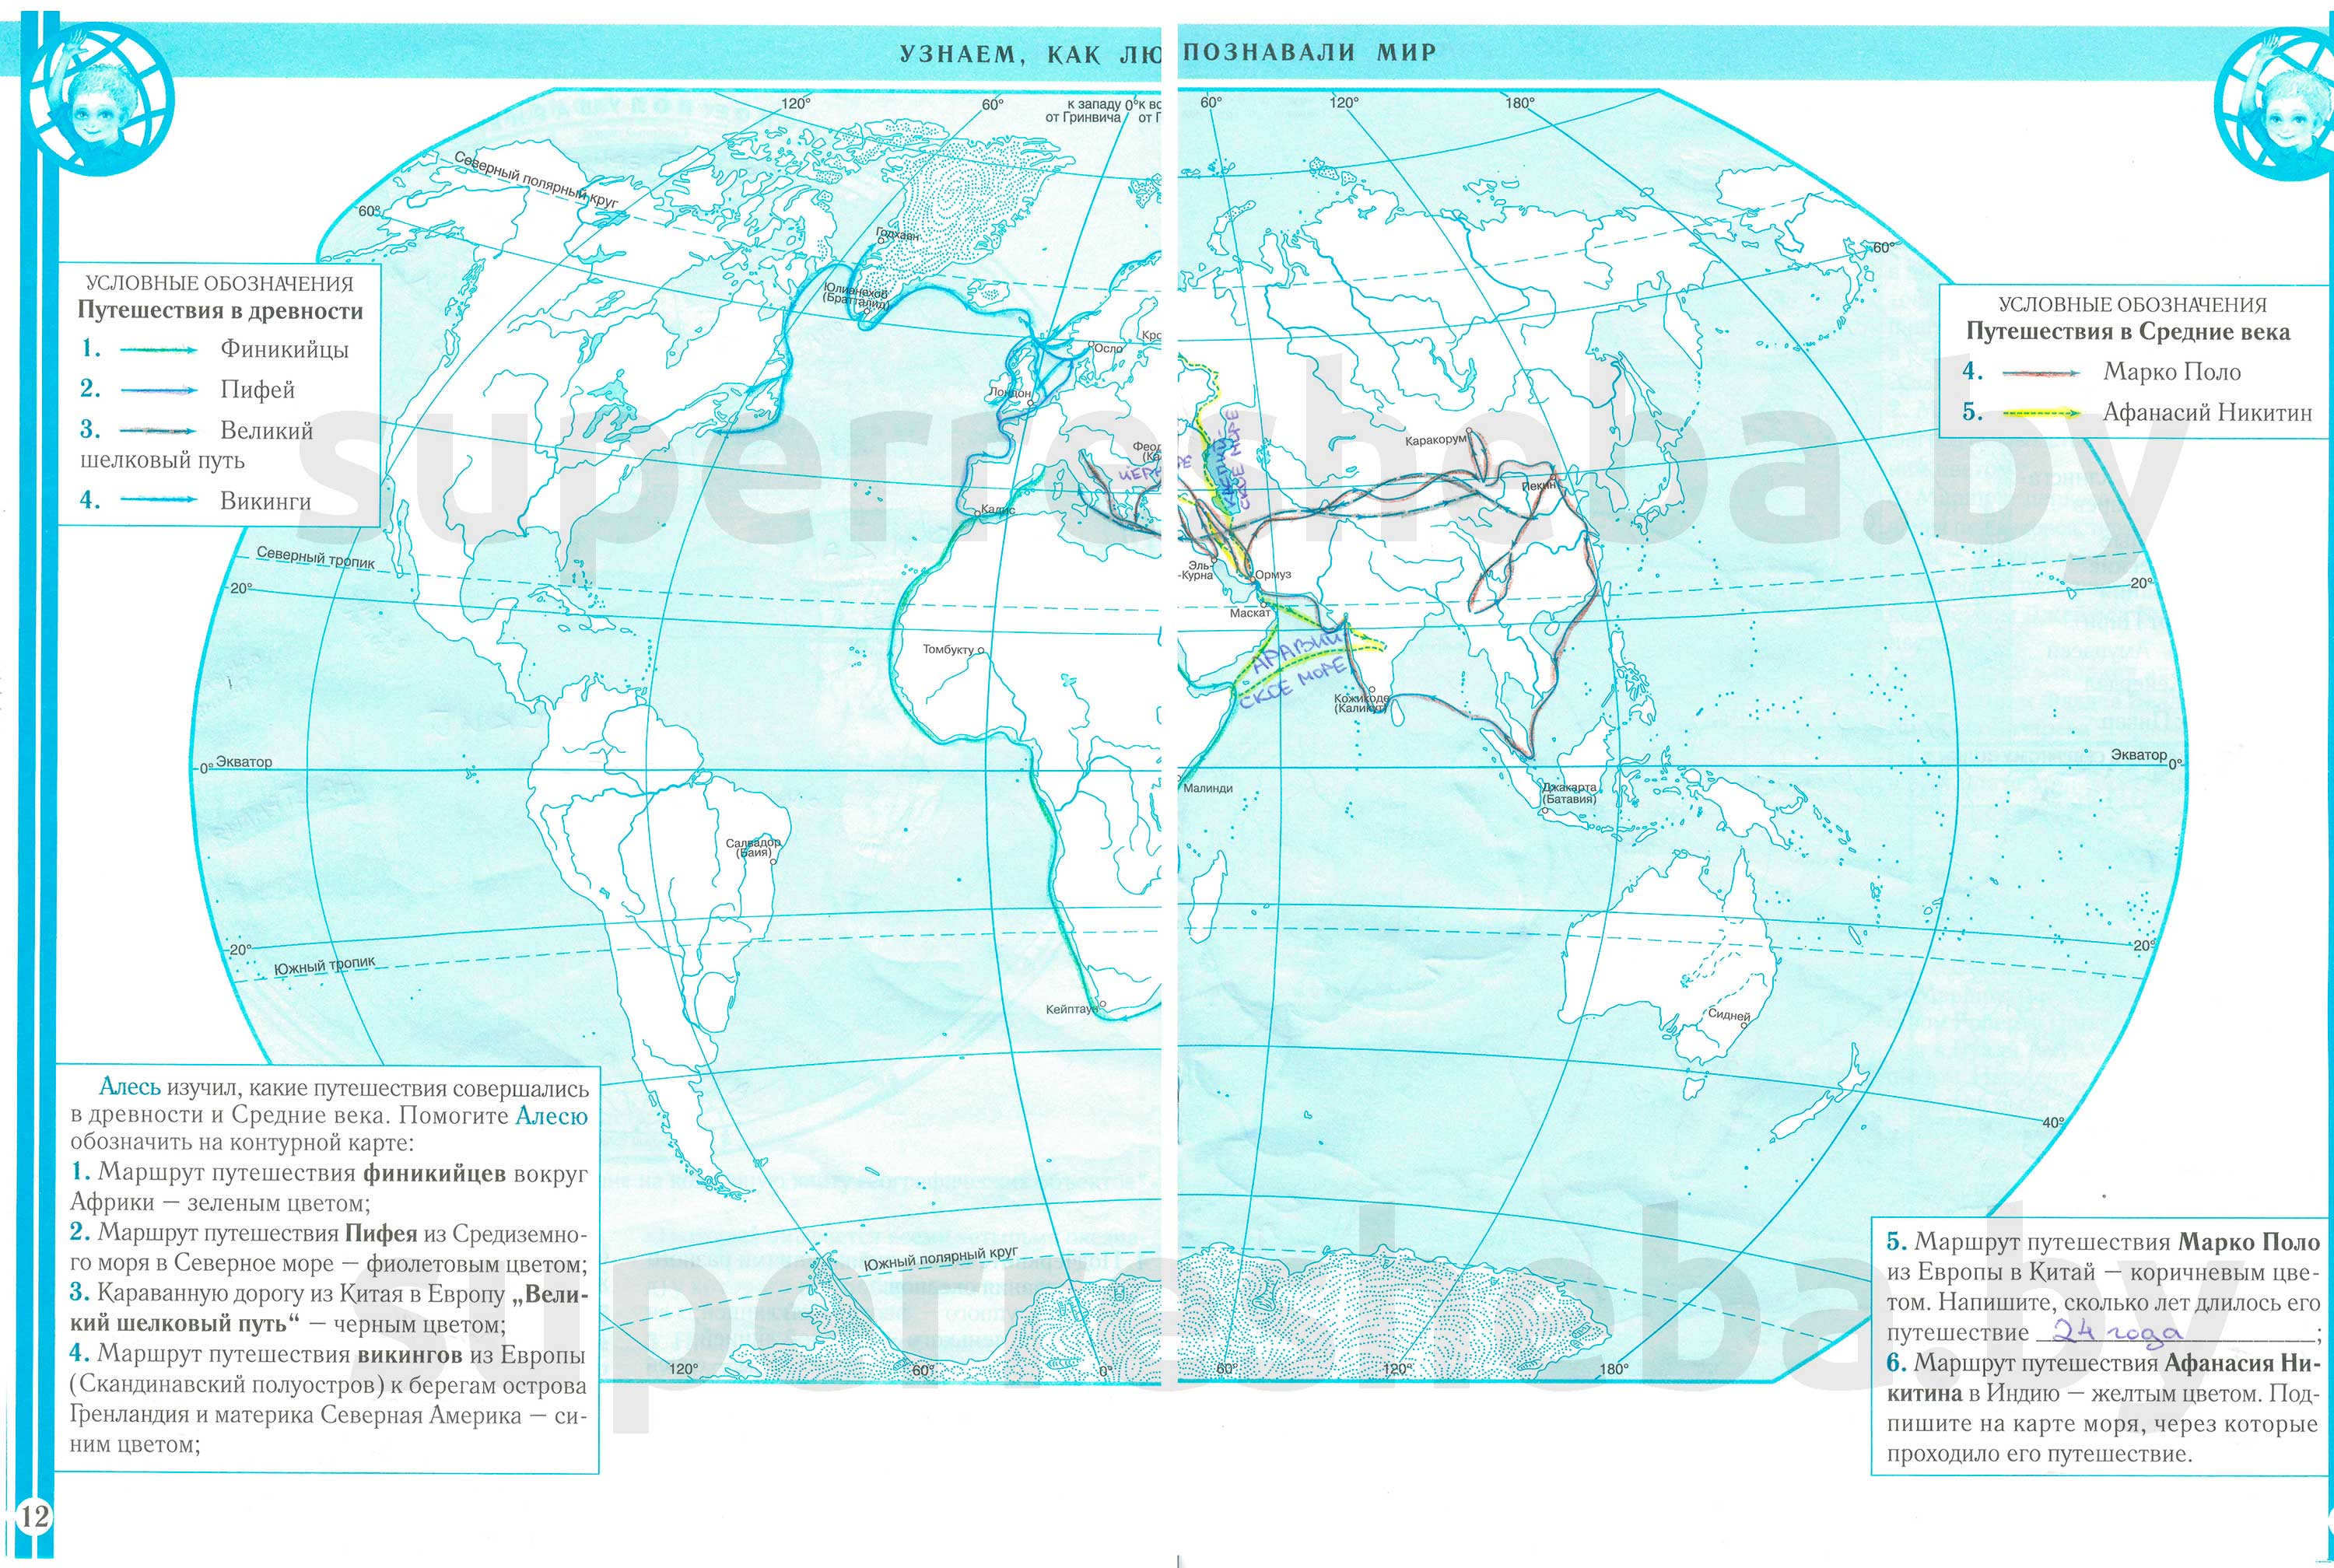 Решебник чел и мир. Контурная карта мир. Маршруты путешественников на контурной карте. Маршрут Пифея на карте. Контурная карта человек и мир 5 класс.